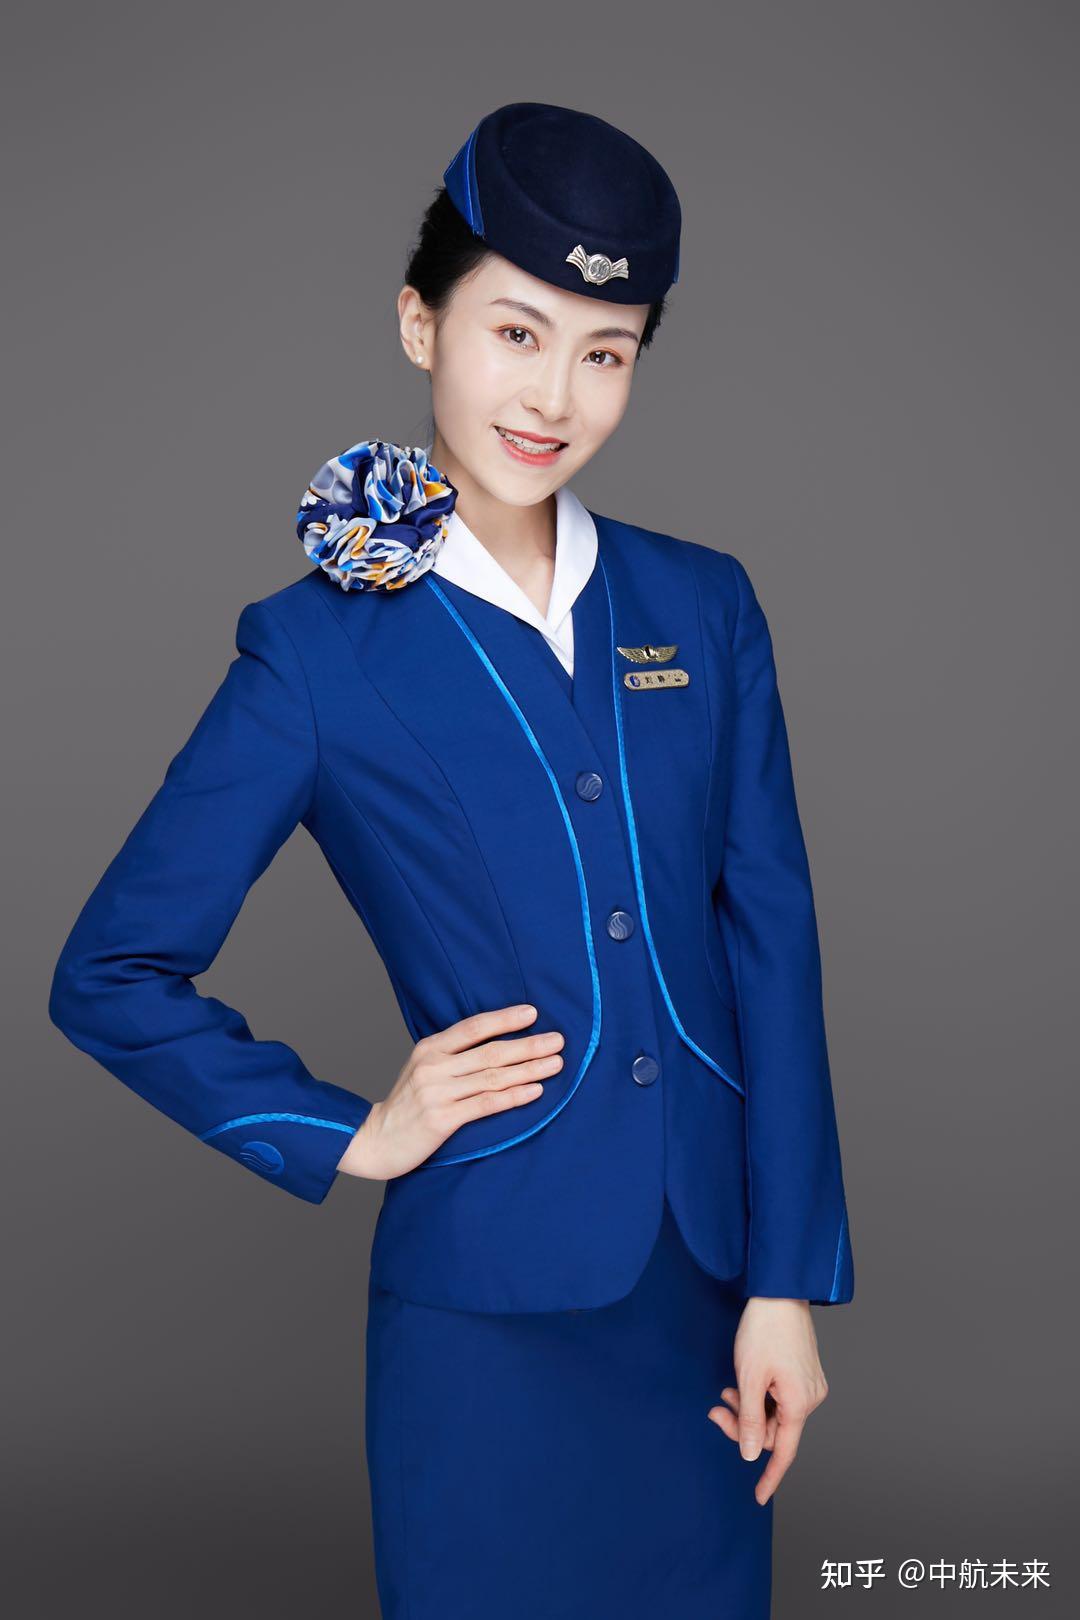 中国空姐个人图片